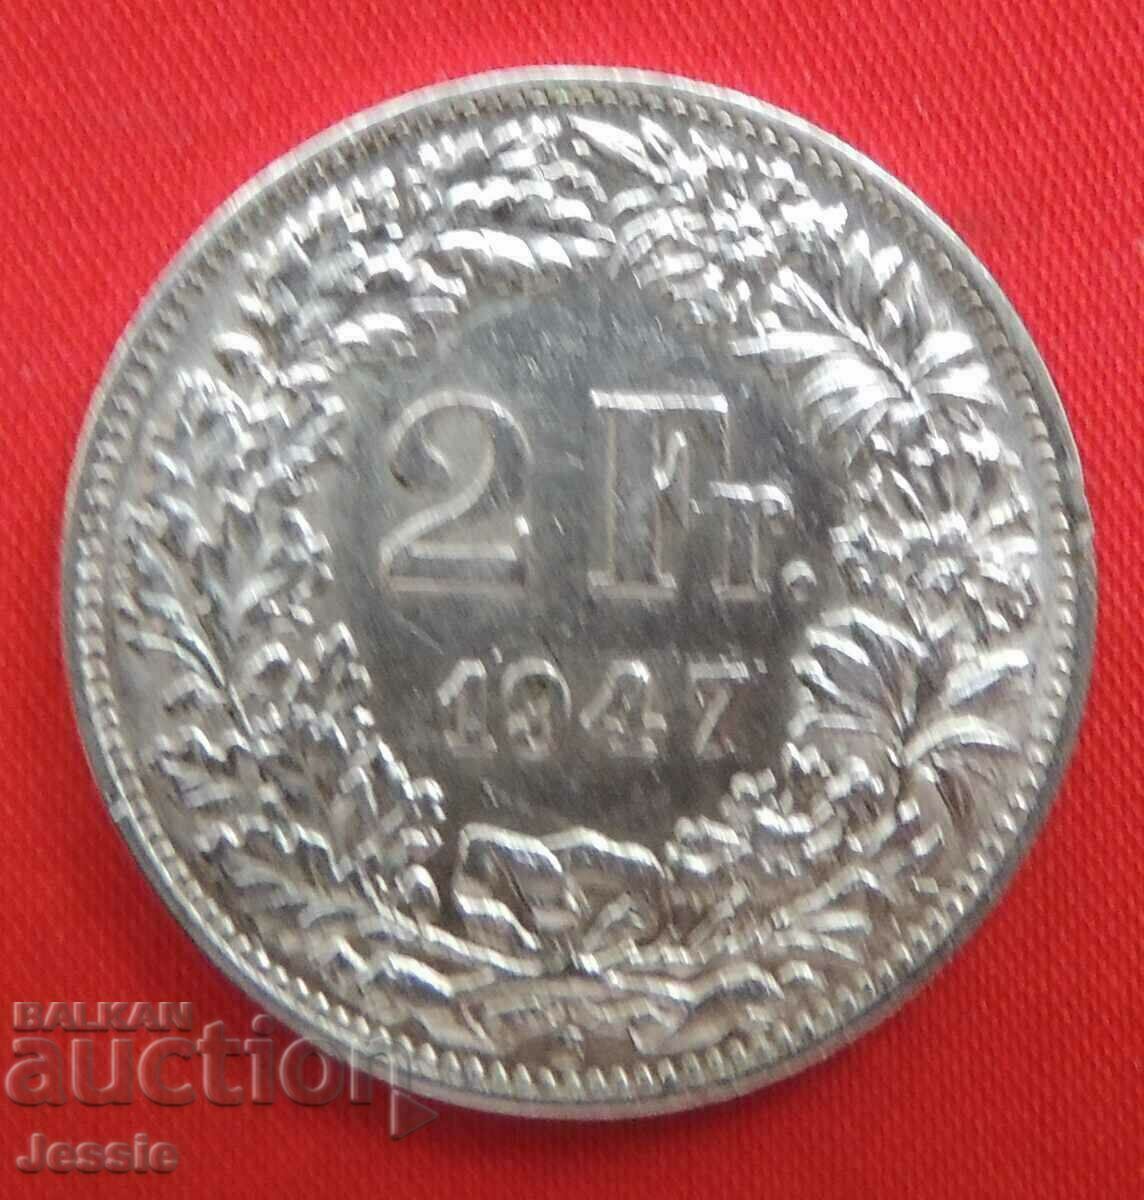 2 Франка 1947 B Швейцария сребро